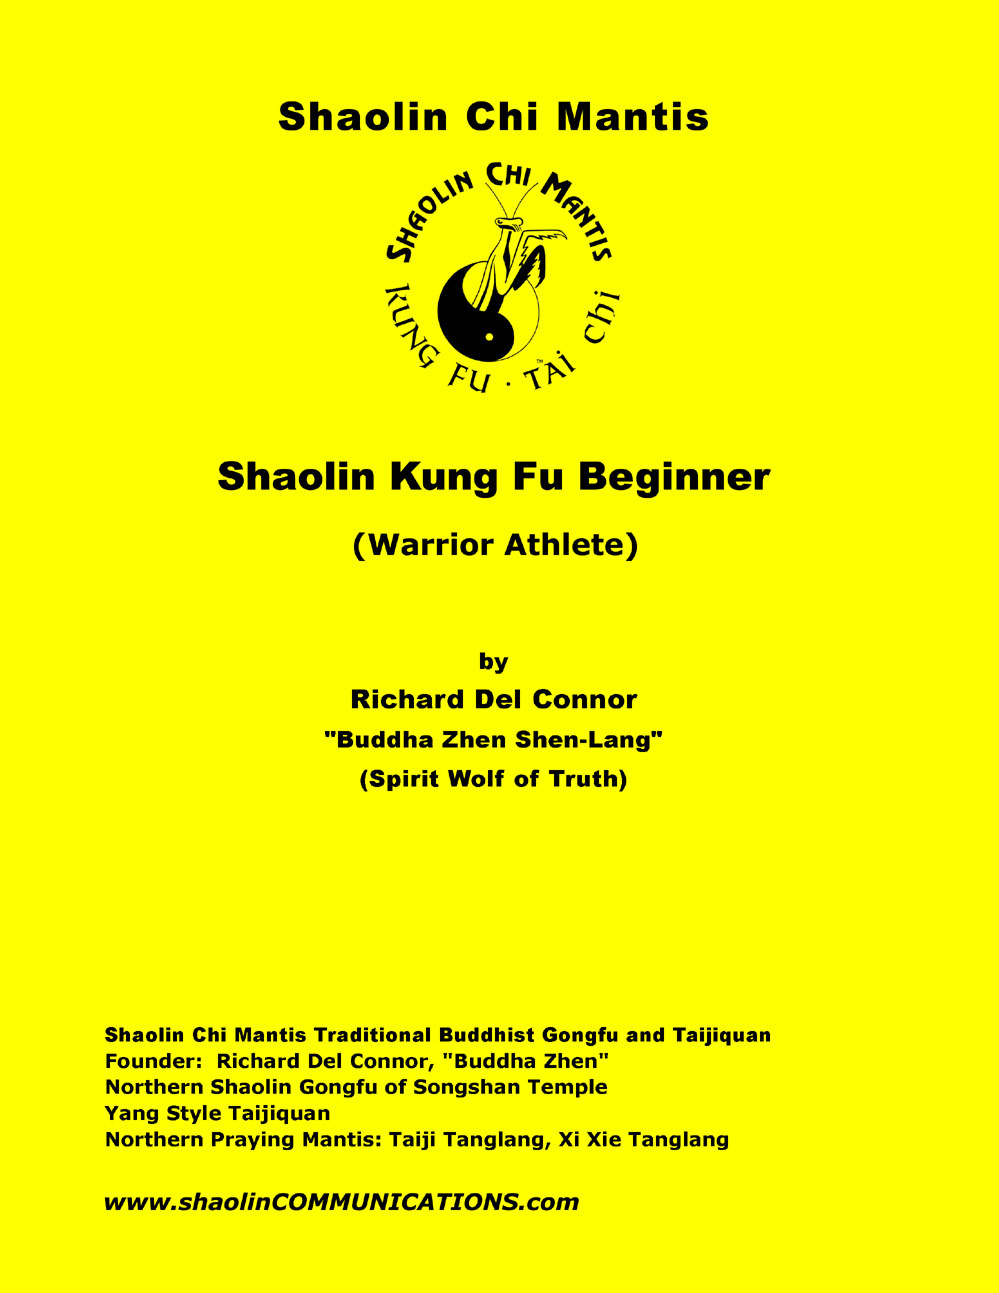 ShKFBeg-Cover-PDF-999